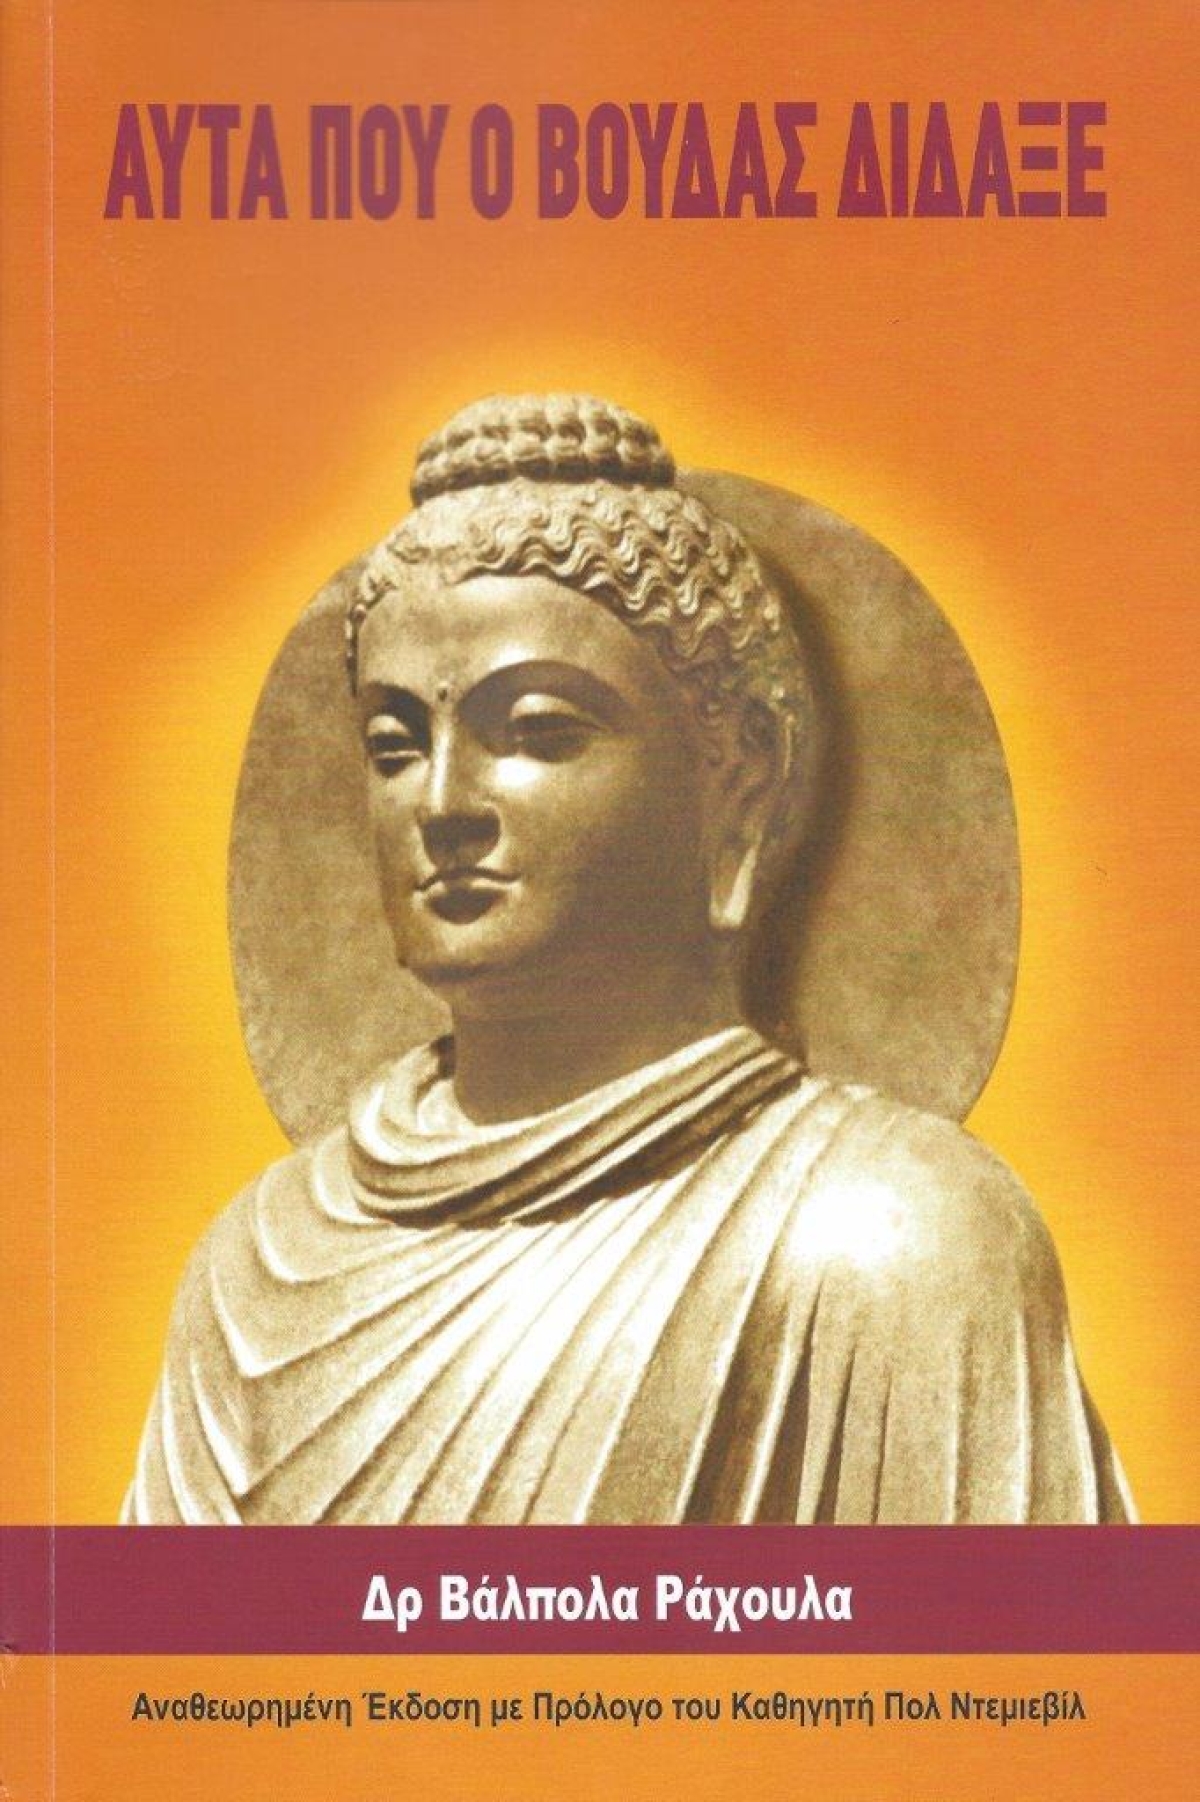 Κυκλοφόρησε από τις Εκδόσεις Theravada το βιβλίο του Δρ. Βάλπολα Ράχουλα &quot;Αυτά που ο Βούδας δίδαξε&quot;